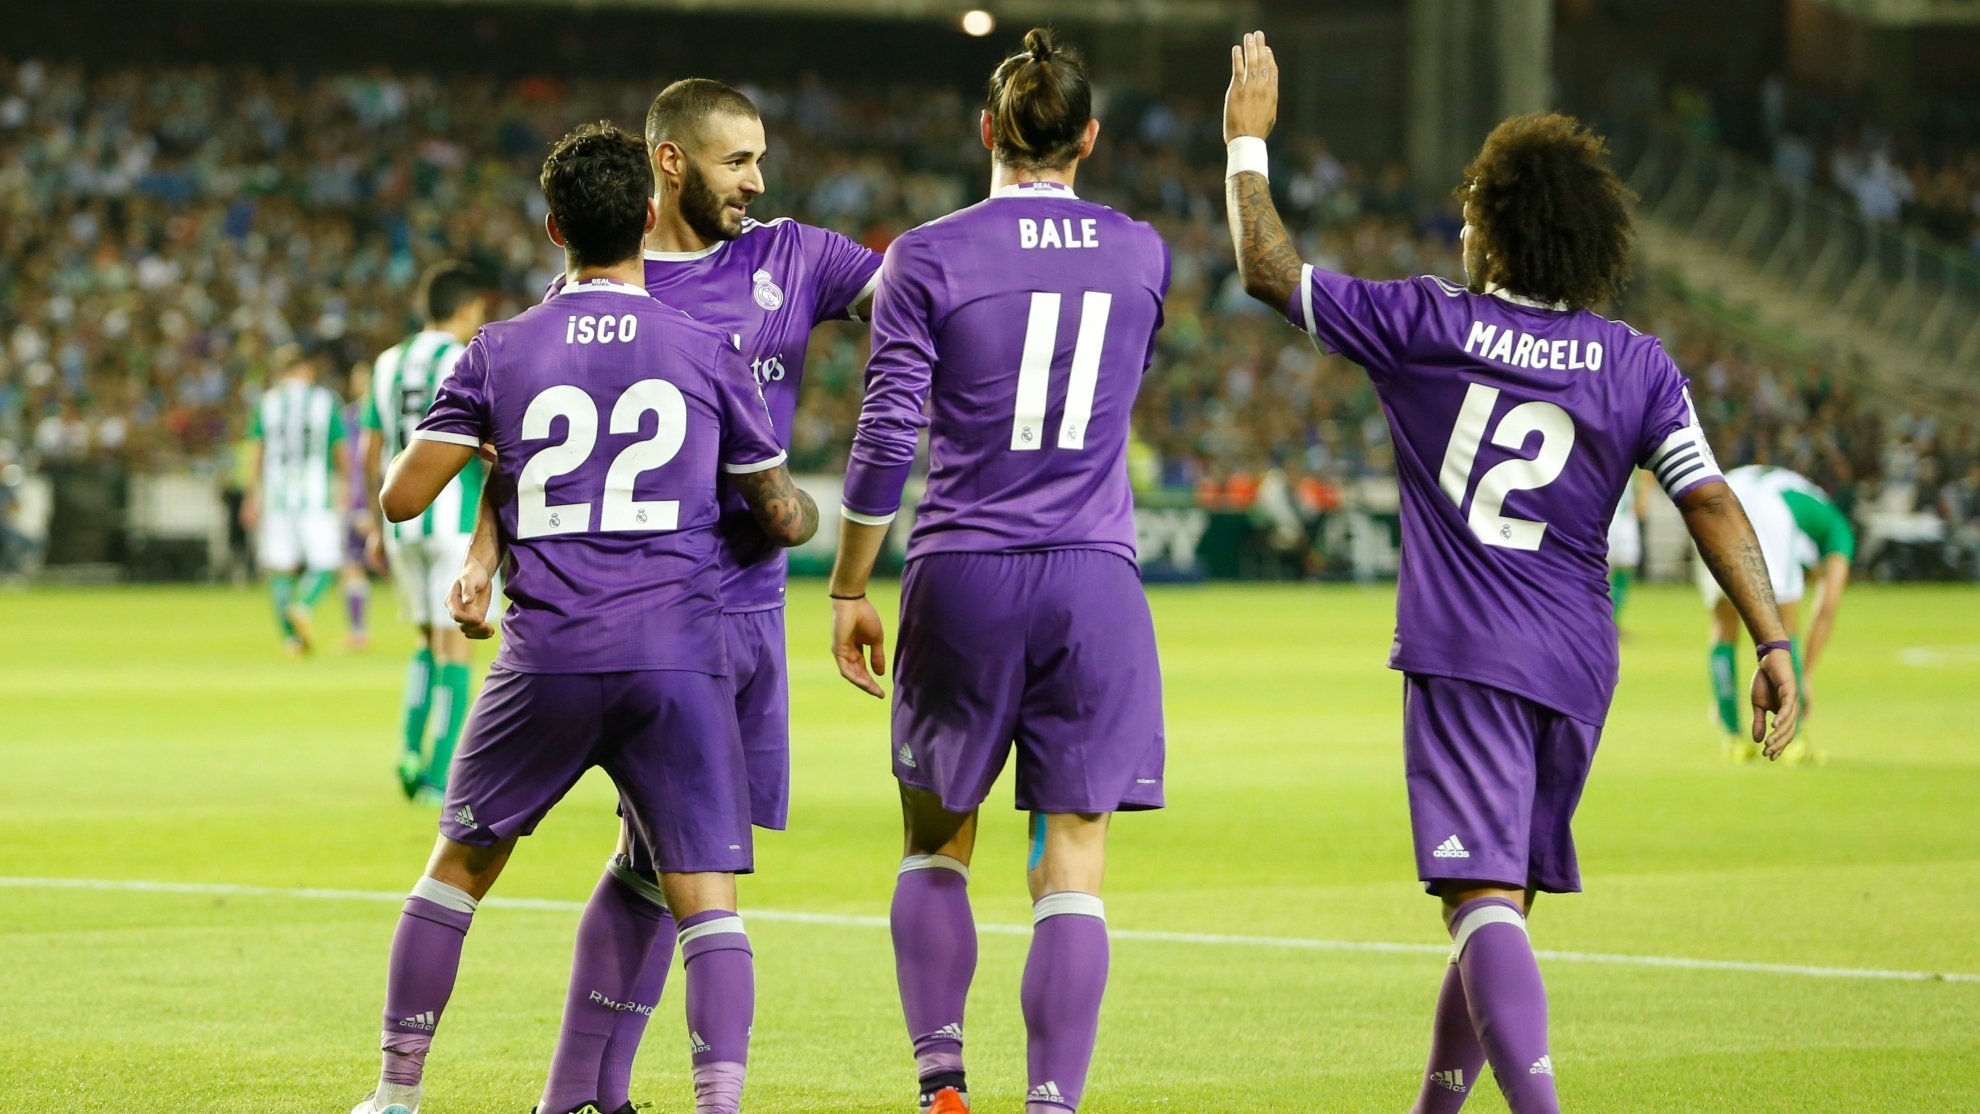 Isco, Bale y Marcelo celebrando un gol con Benzema.